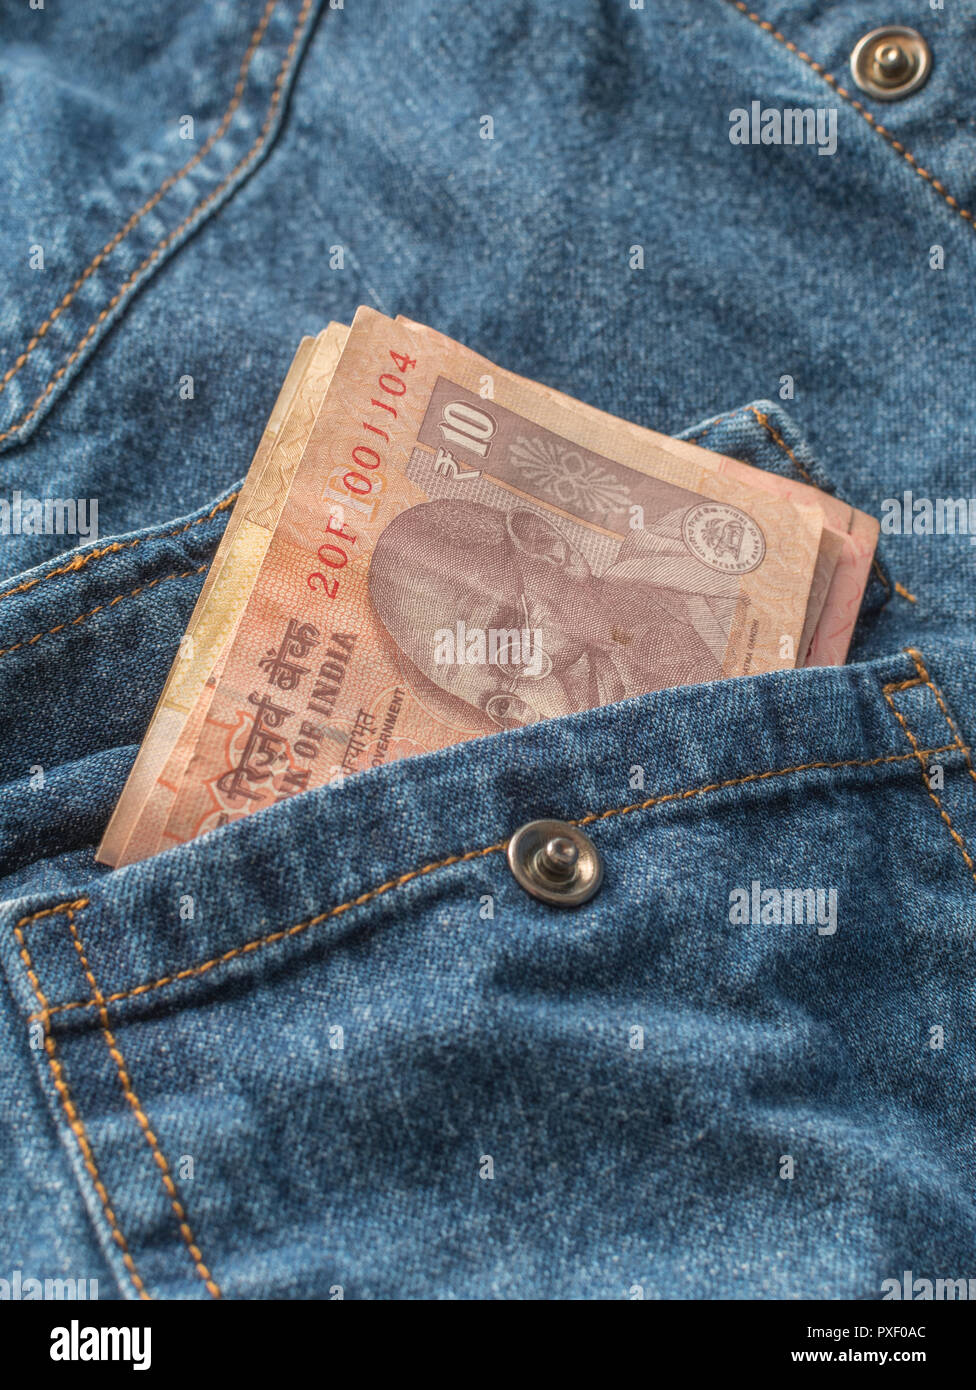 10 Indische Rupie Geldschein in der Tasche. Metapher persönliche Einkommen, indische Löhne Ebenen, Indien Wirtschaft, Indien, Rupie Währung, BRIC-Staaten, Indien Zinssatz. Stockfoto